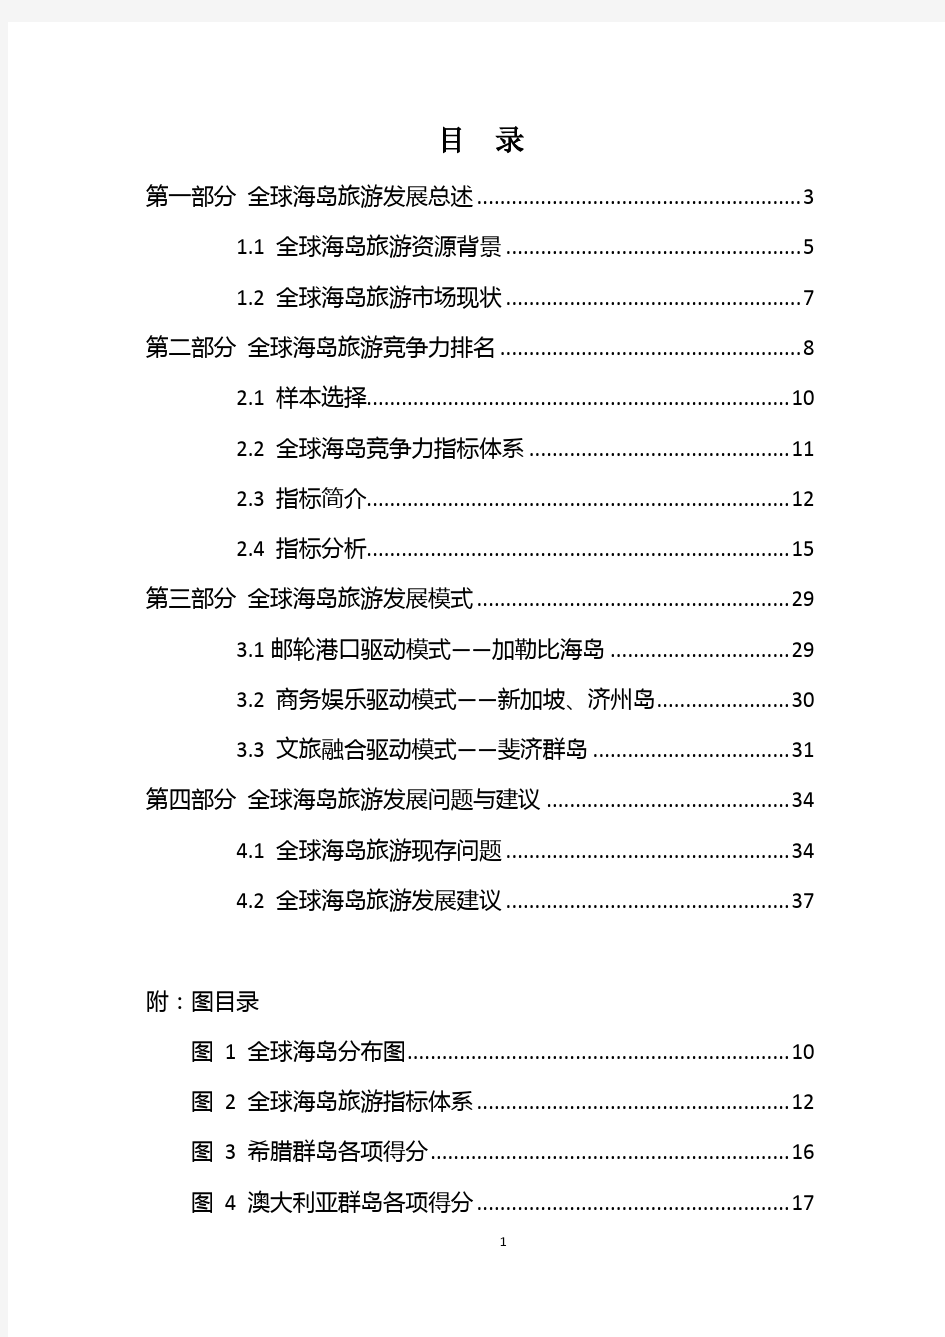 中国旅游研究院-全球海岛旅游目的地竞争力排名研究报告-2019.8-41页